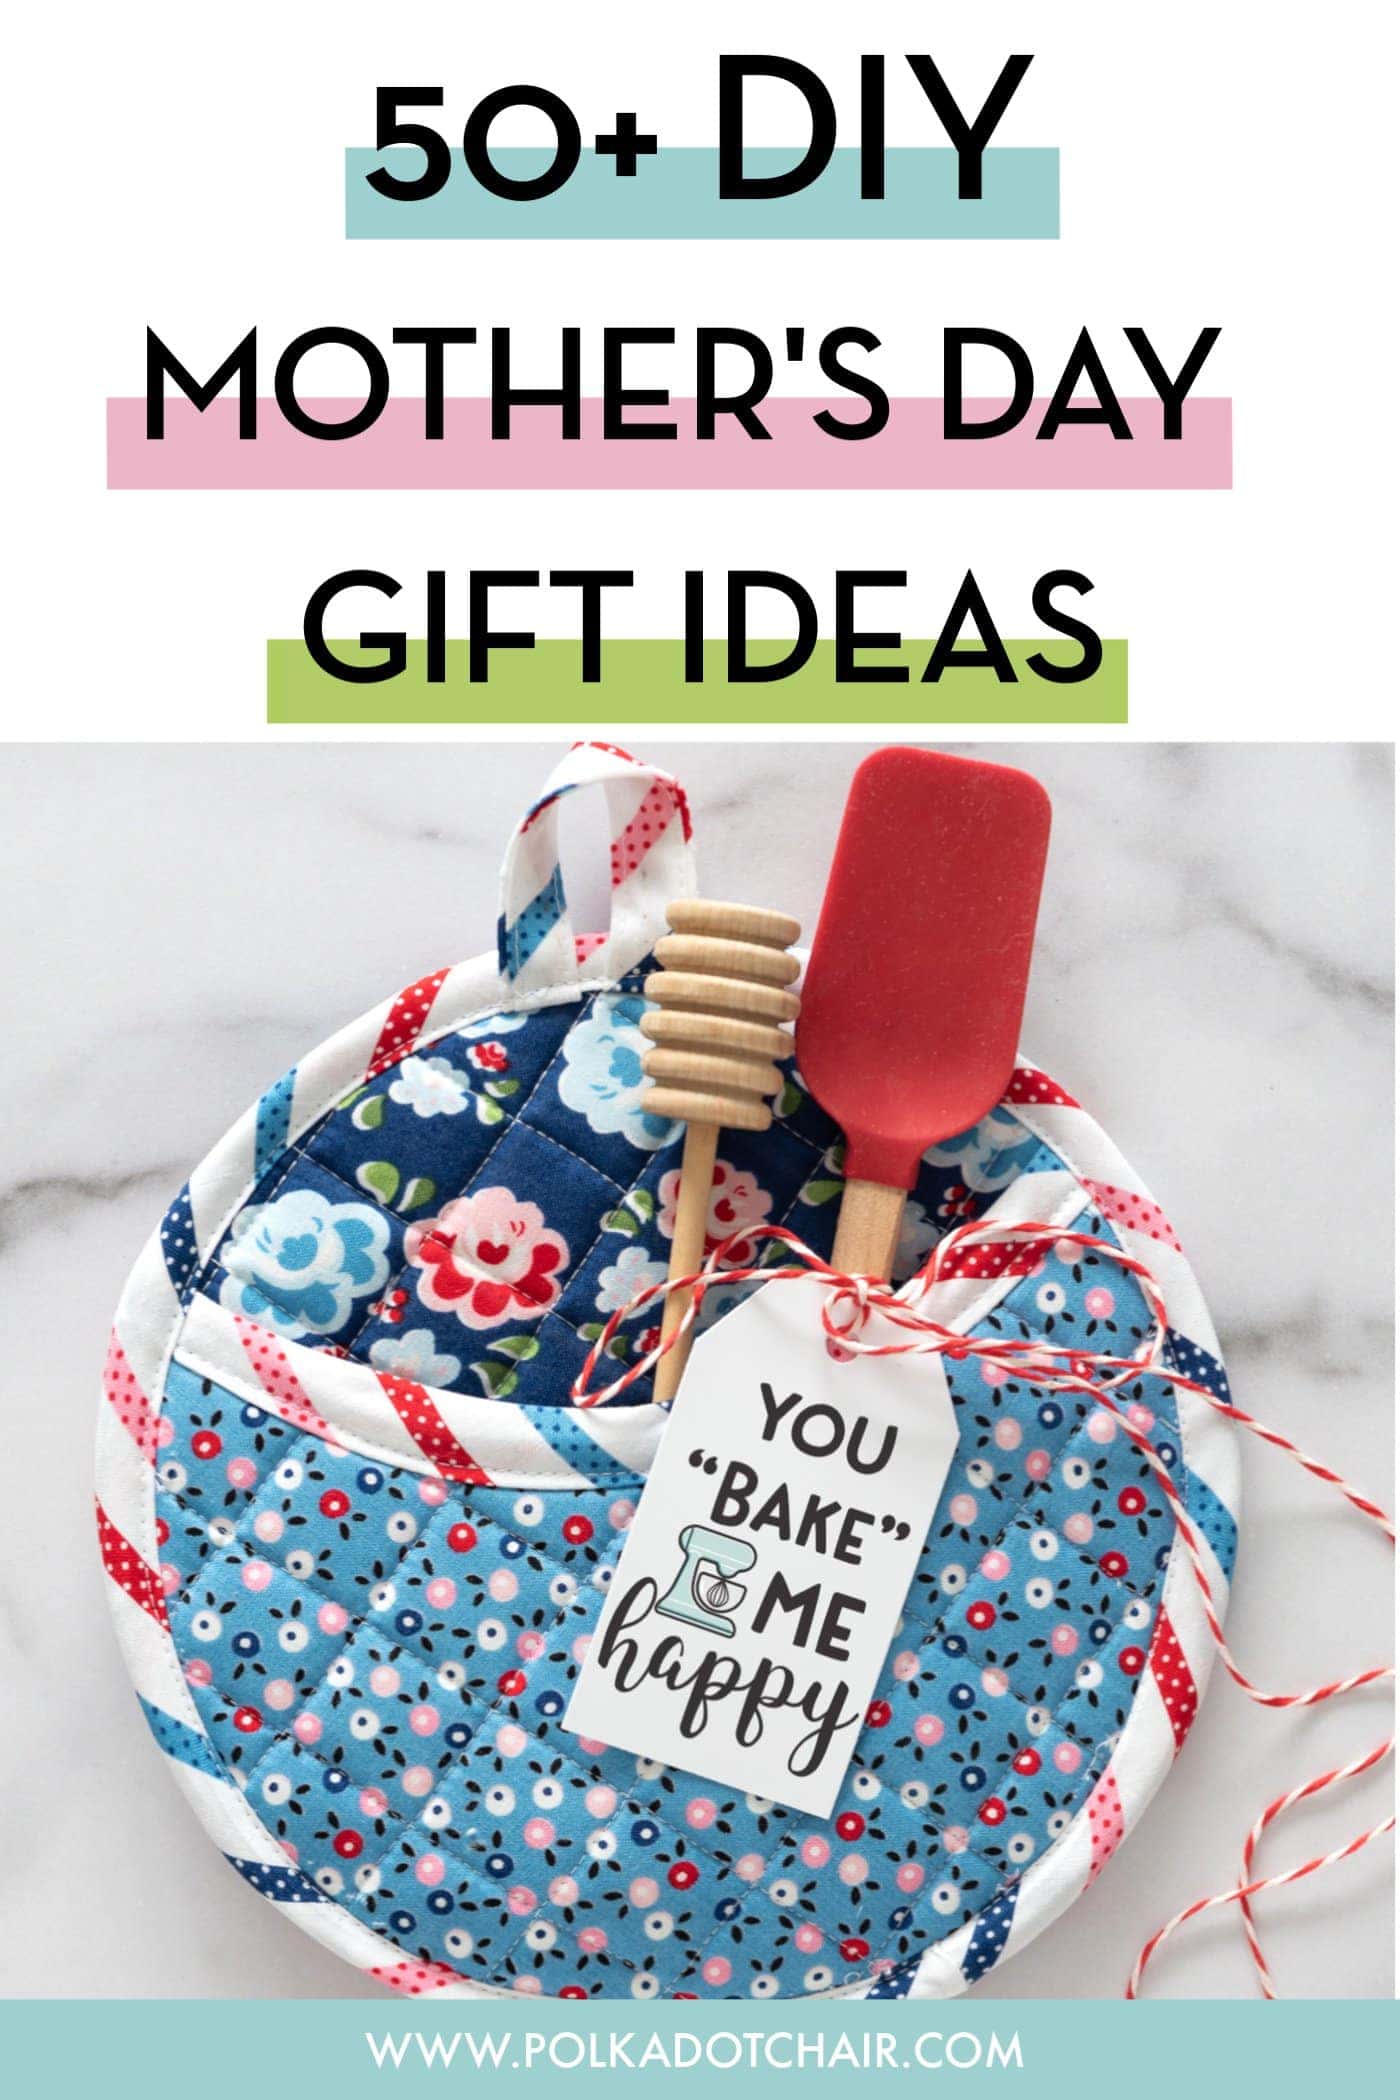 Idées cadeaux DIY pour la fête des mères